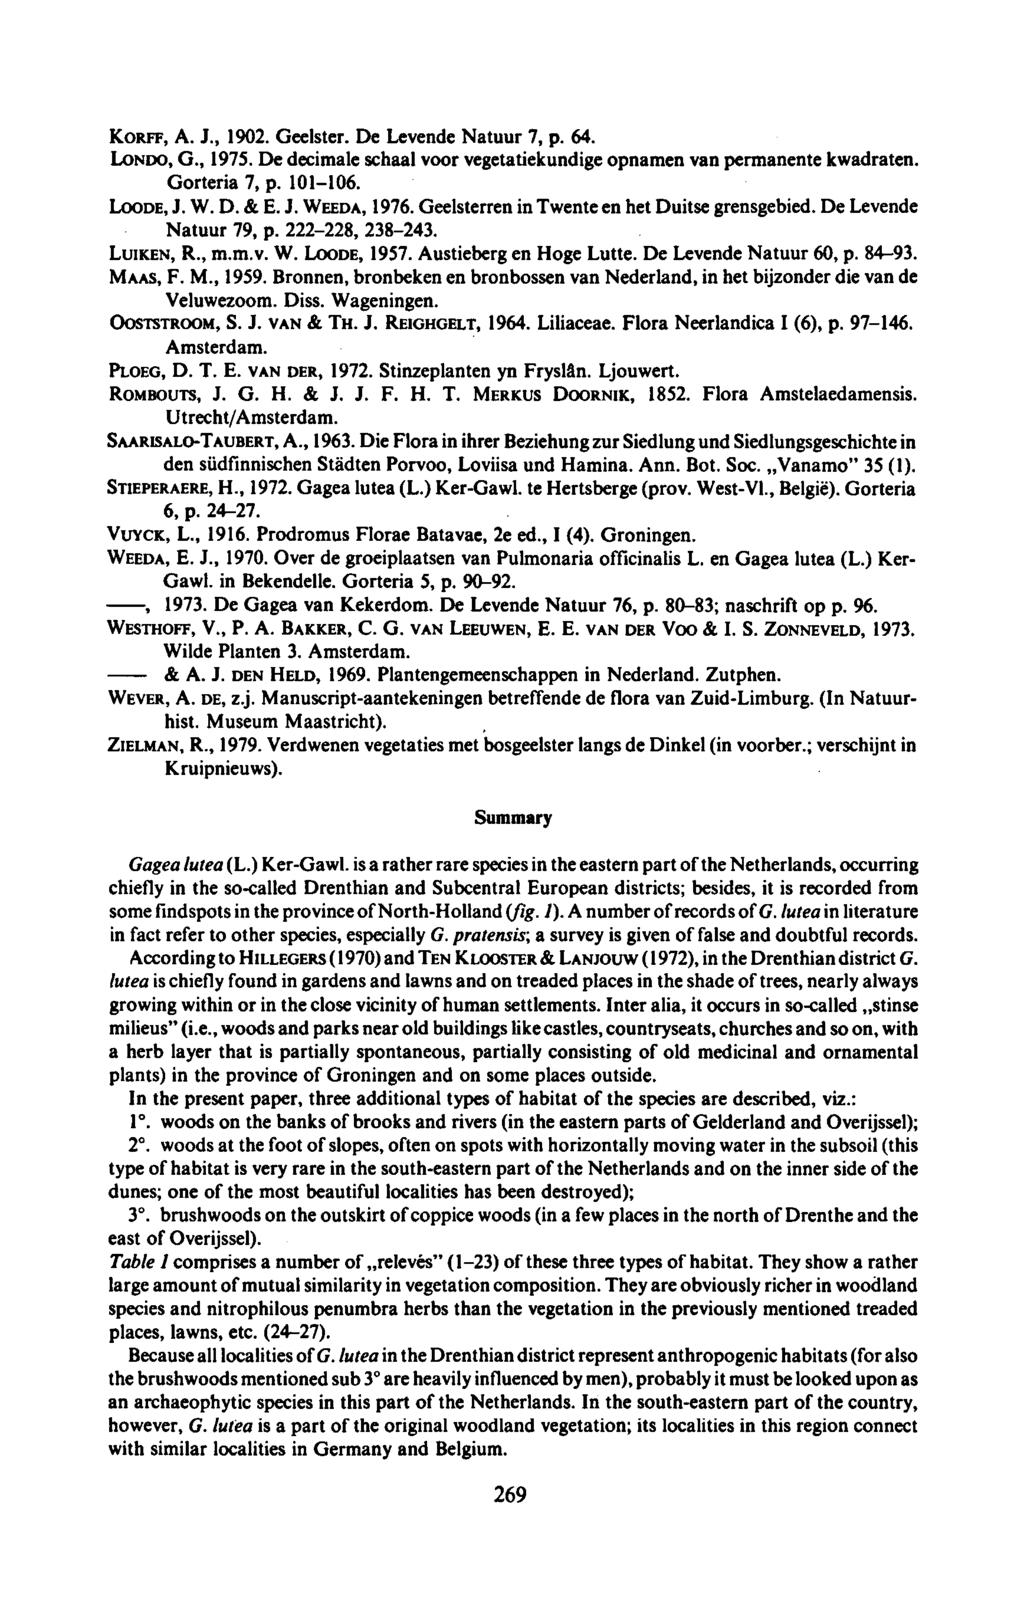 KORFF, A. J., 190. Geelster. De Levende Natuur 7, p. 64. LONDO, G., 1975. De decimale schaal voor vegetatiekundigeopnamen van permanente kwadraten. Gorteria 7, 101106. p. LOODE, J. W. D. & E. J. WEEDA, 1976.